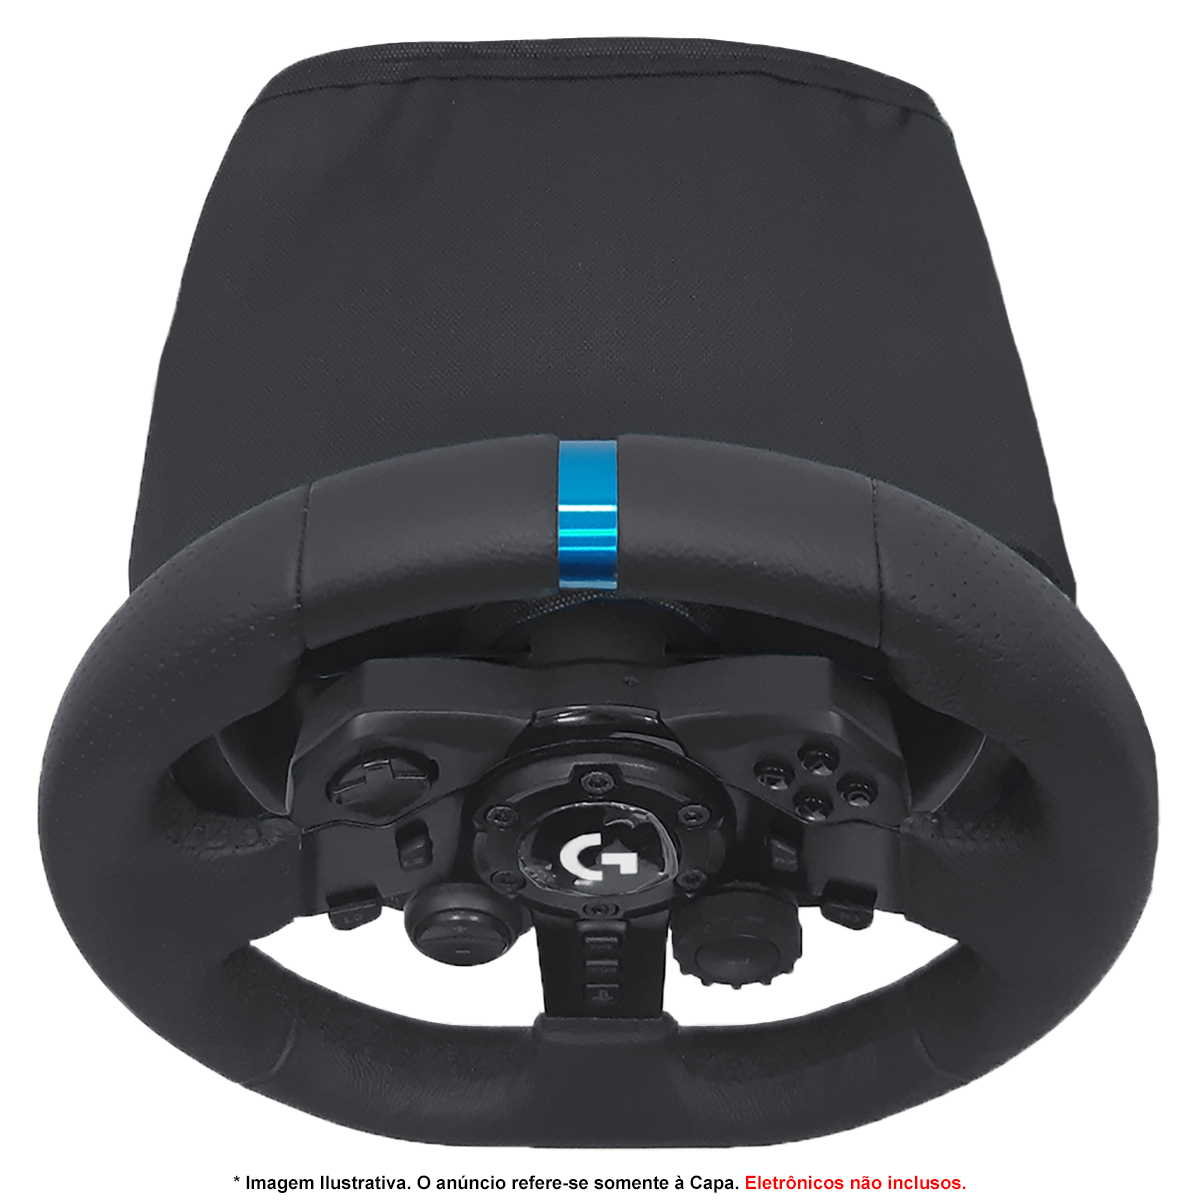 Capa Protetora para Câmbio Racing Wheel G25 G27 Simulador Gamer